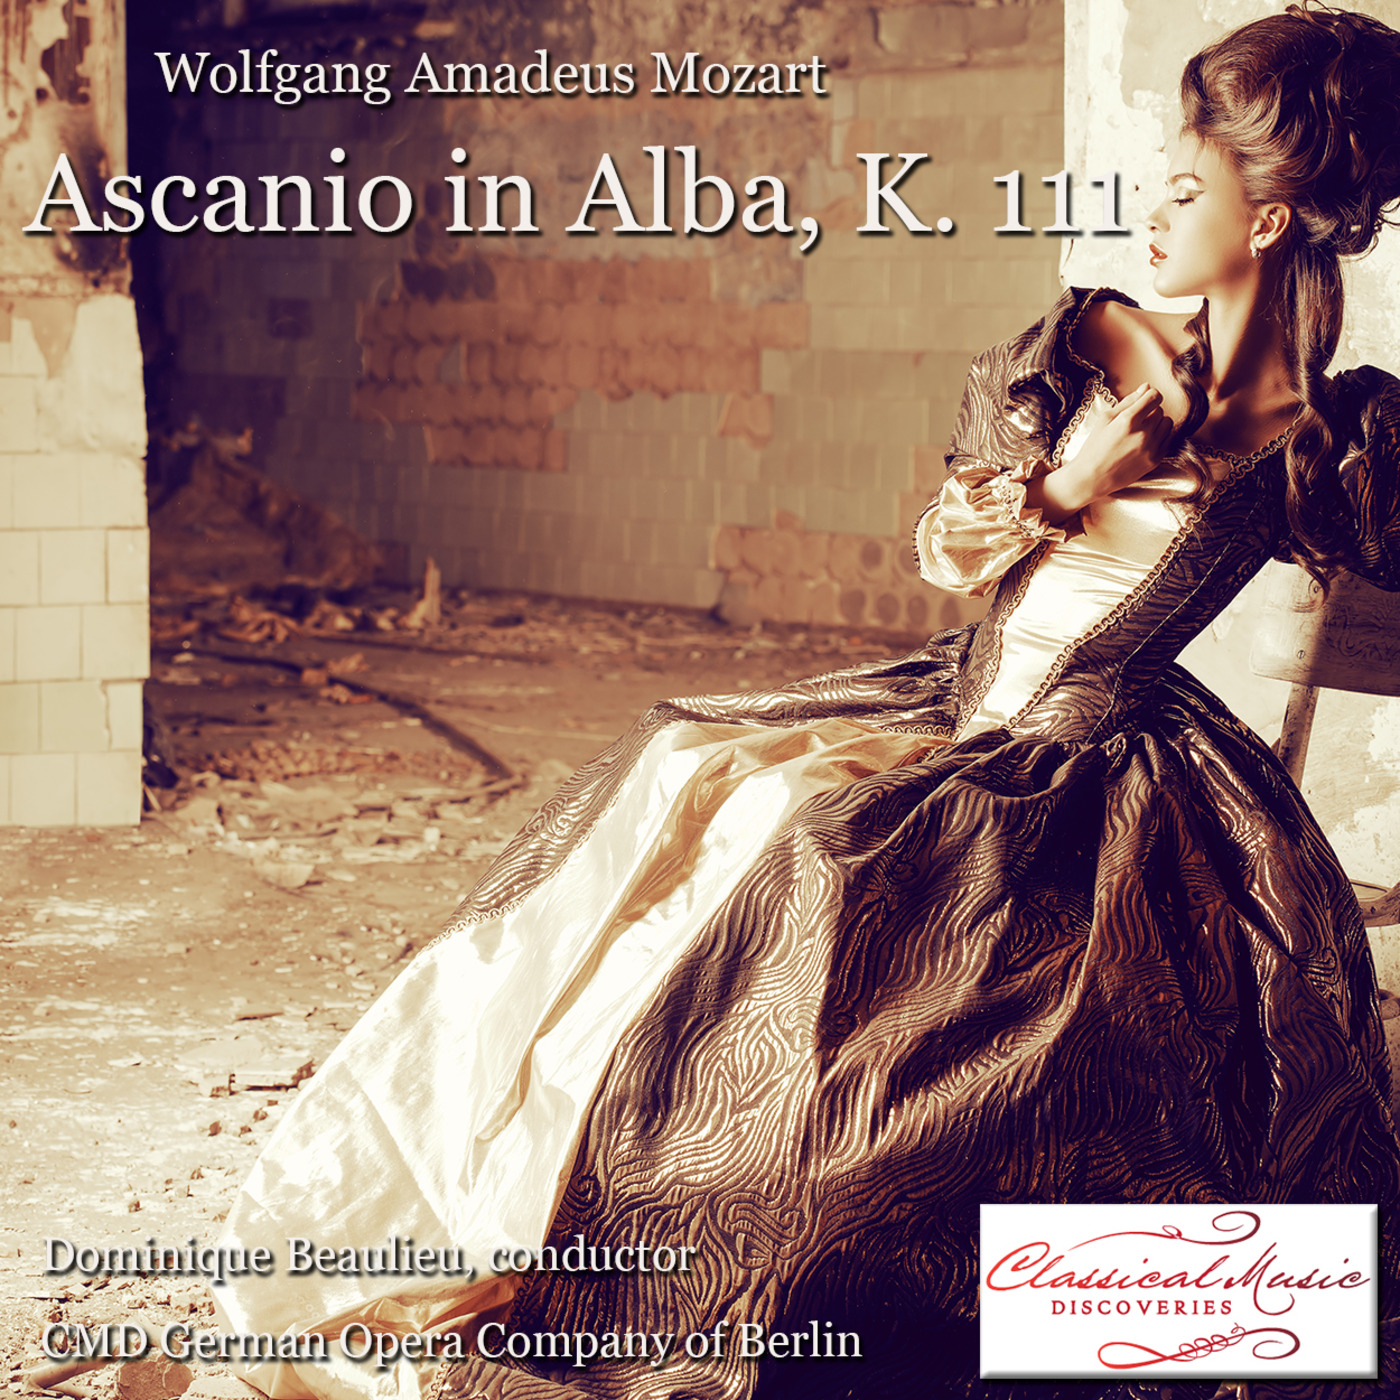 Episode 124: 13124 Mozart: Ascanio in Alba, K. 111